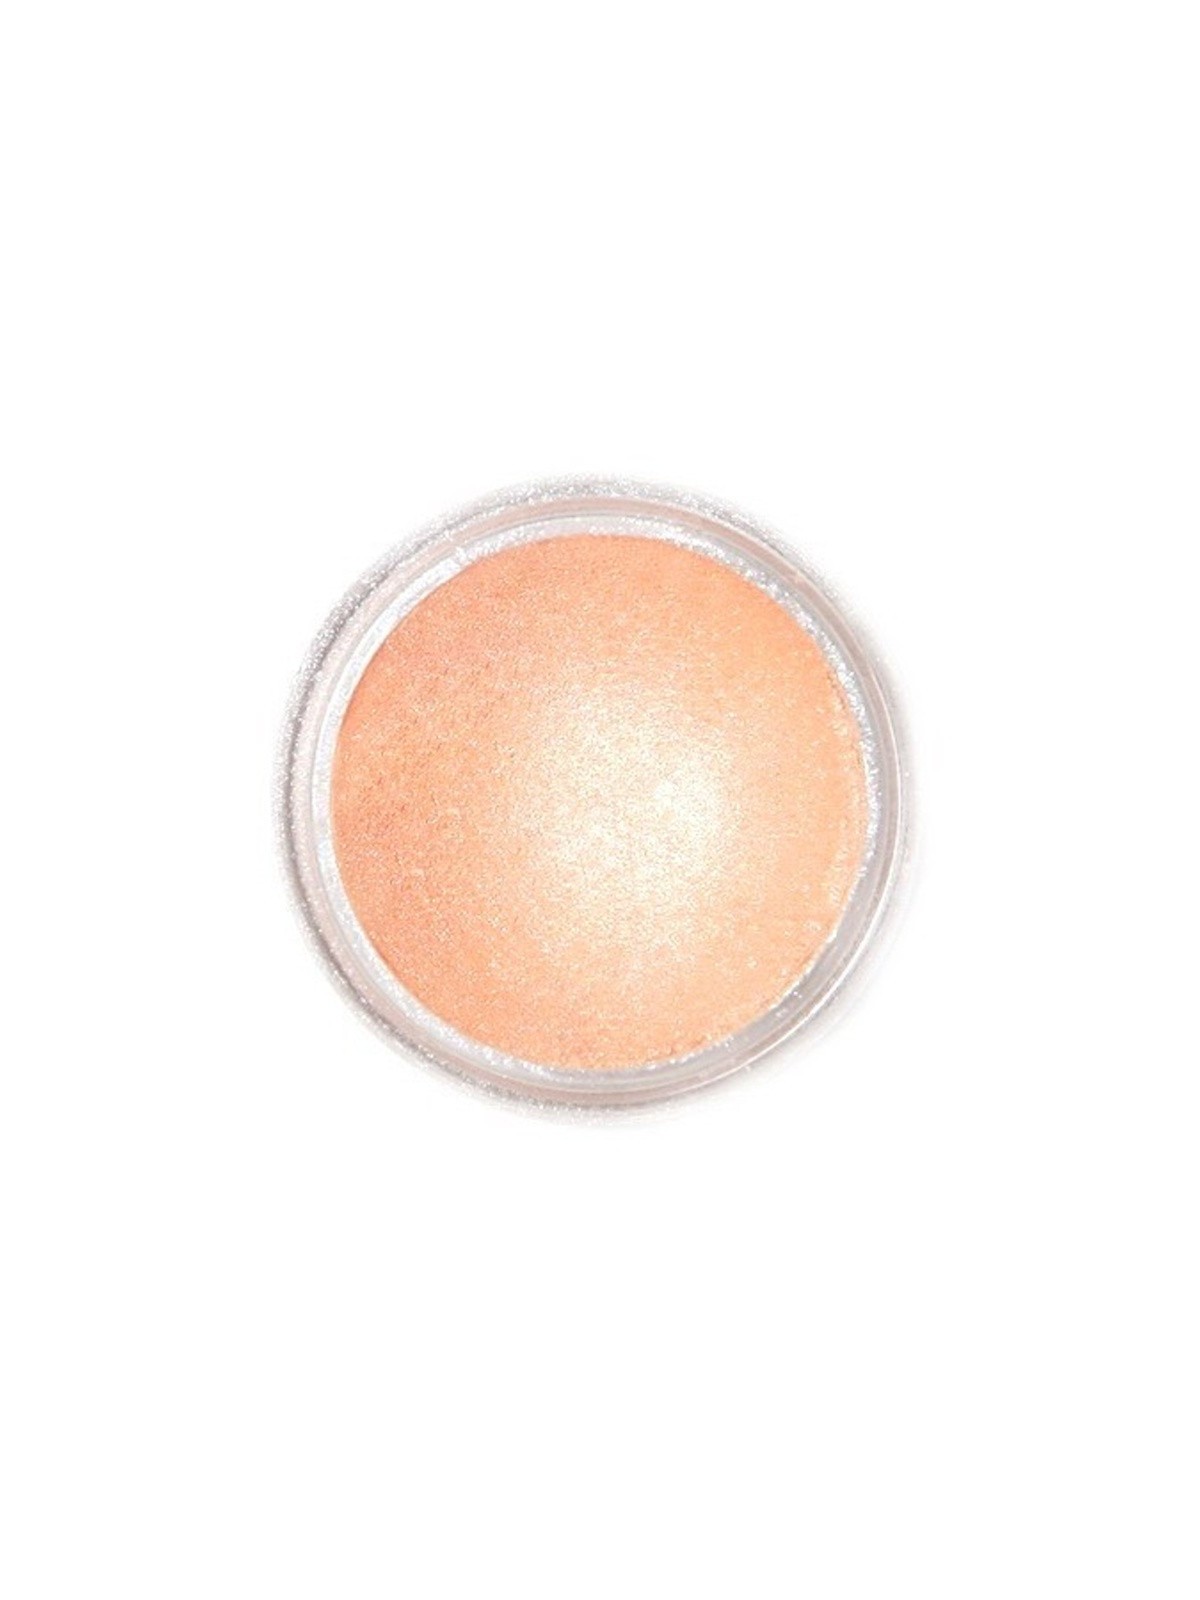 Jedlá prachová perleťová barva Fractal - Dream Rose (2,5 g)